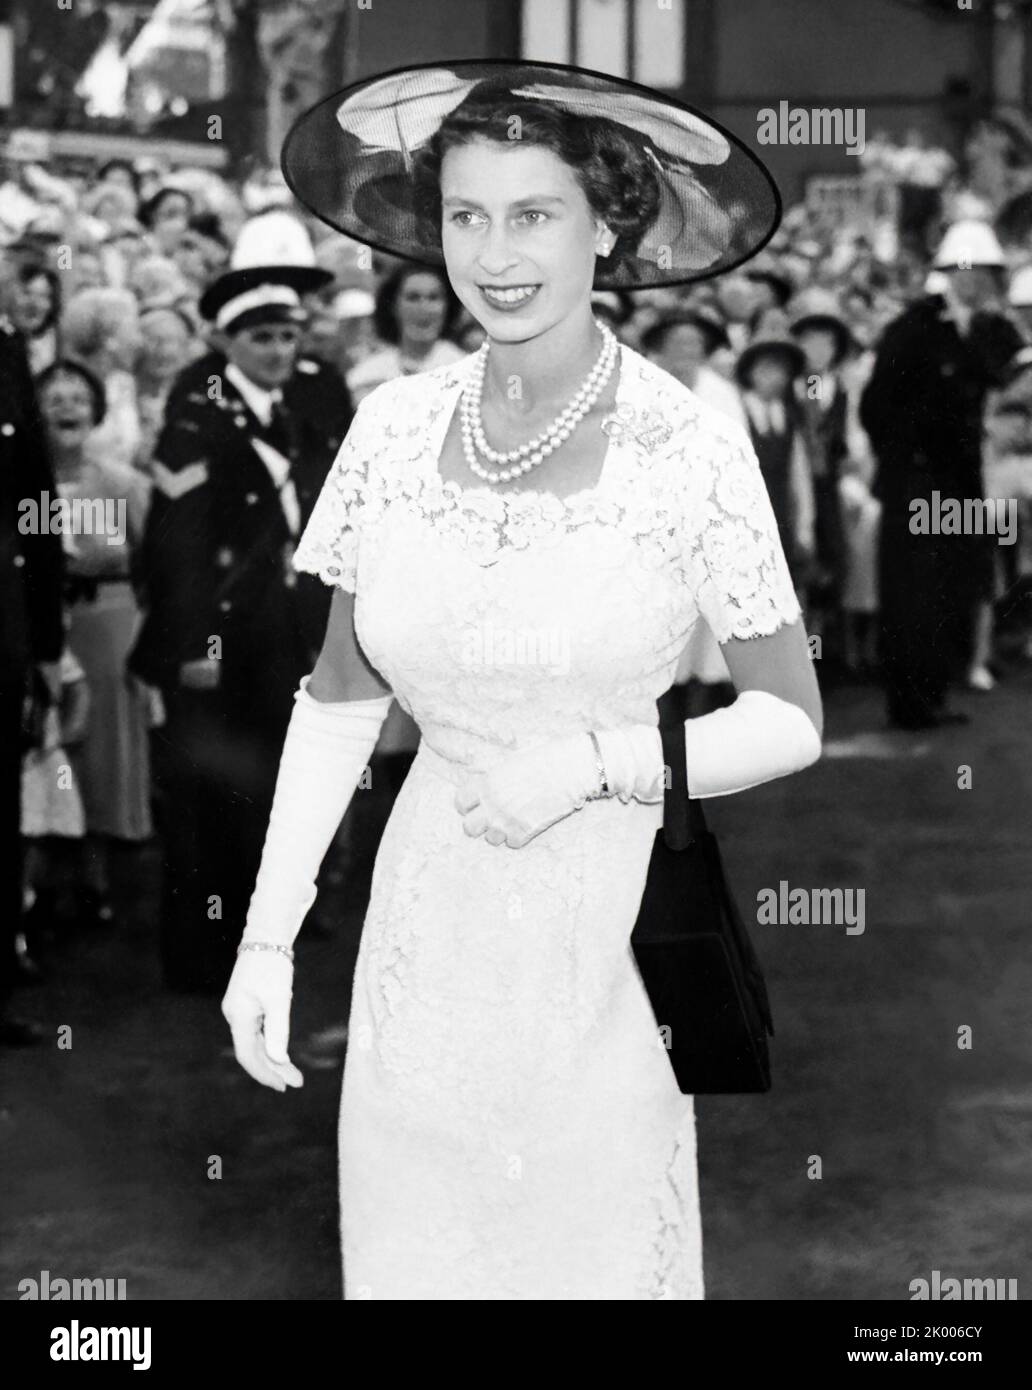 La reine Elizabeth II lors de sa visite royale de Sydney, en Australie, en février 1954. Banque D'Images